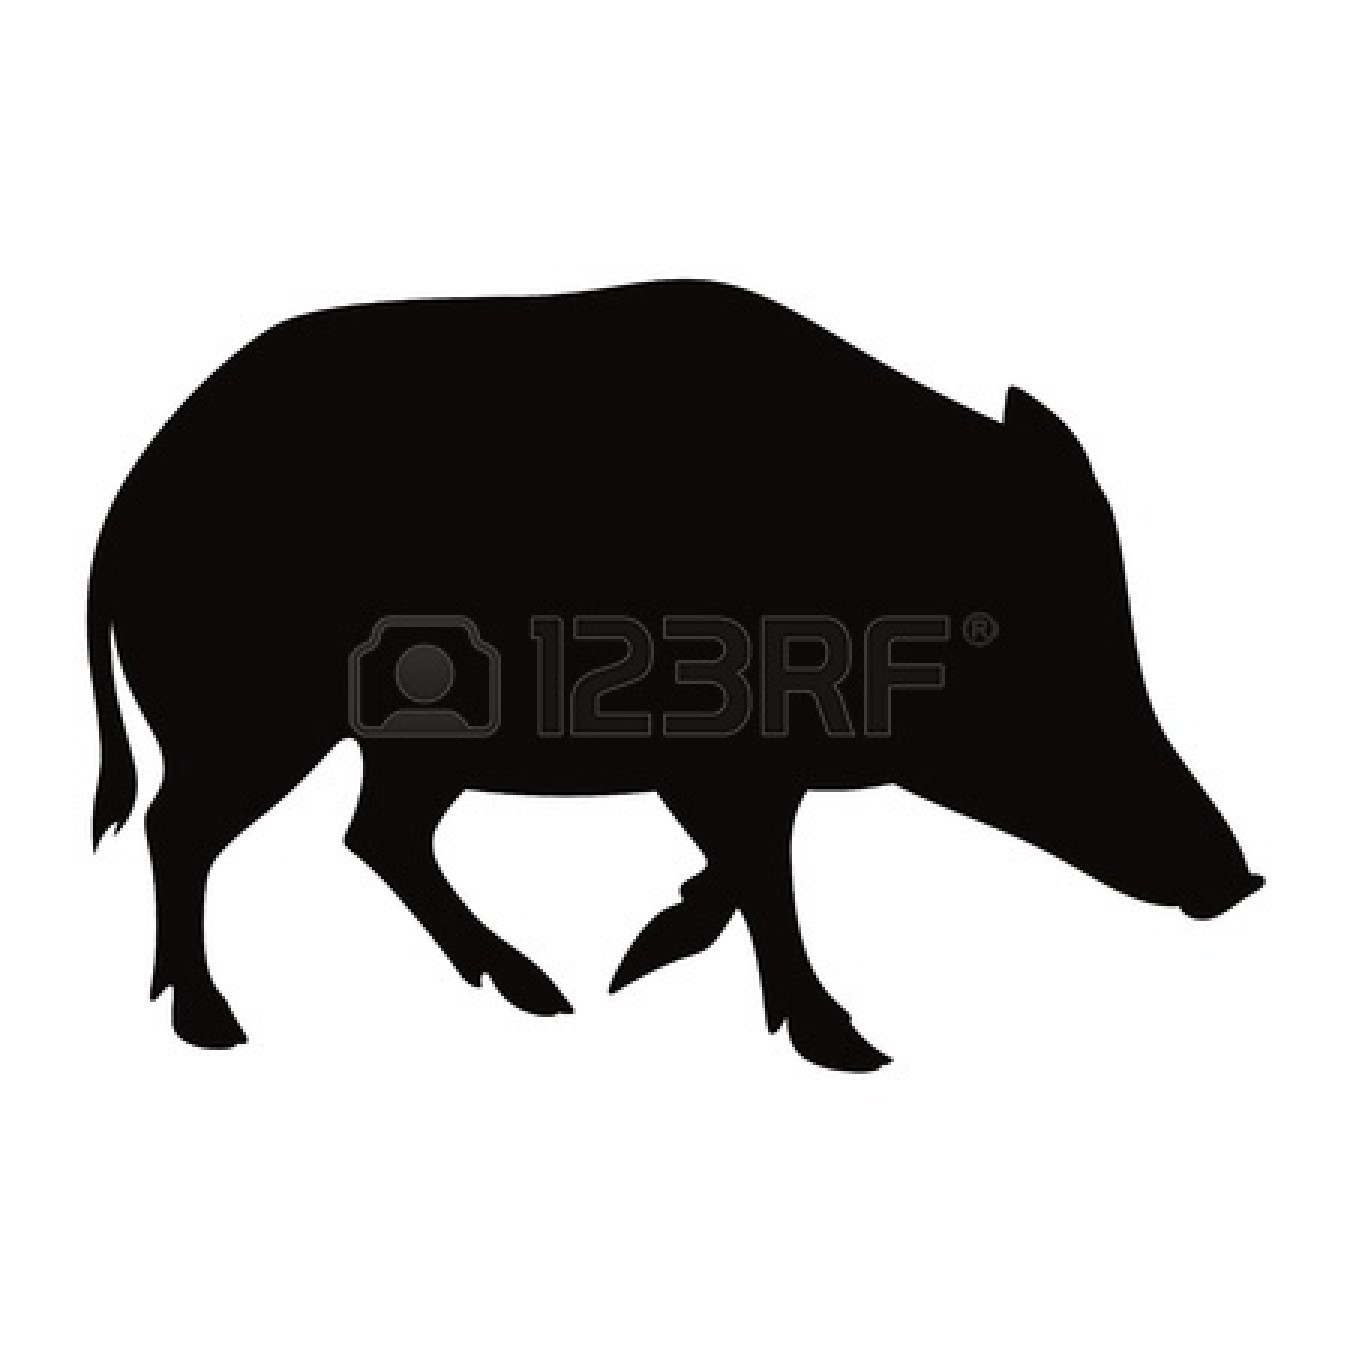 Boar 20clip 20art 11783101 Boar Animal Pig Beast Nature Vector